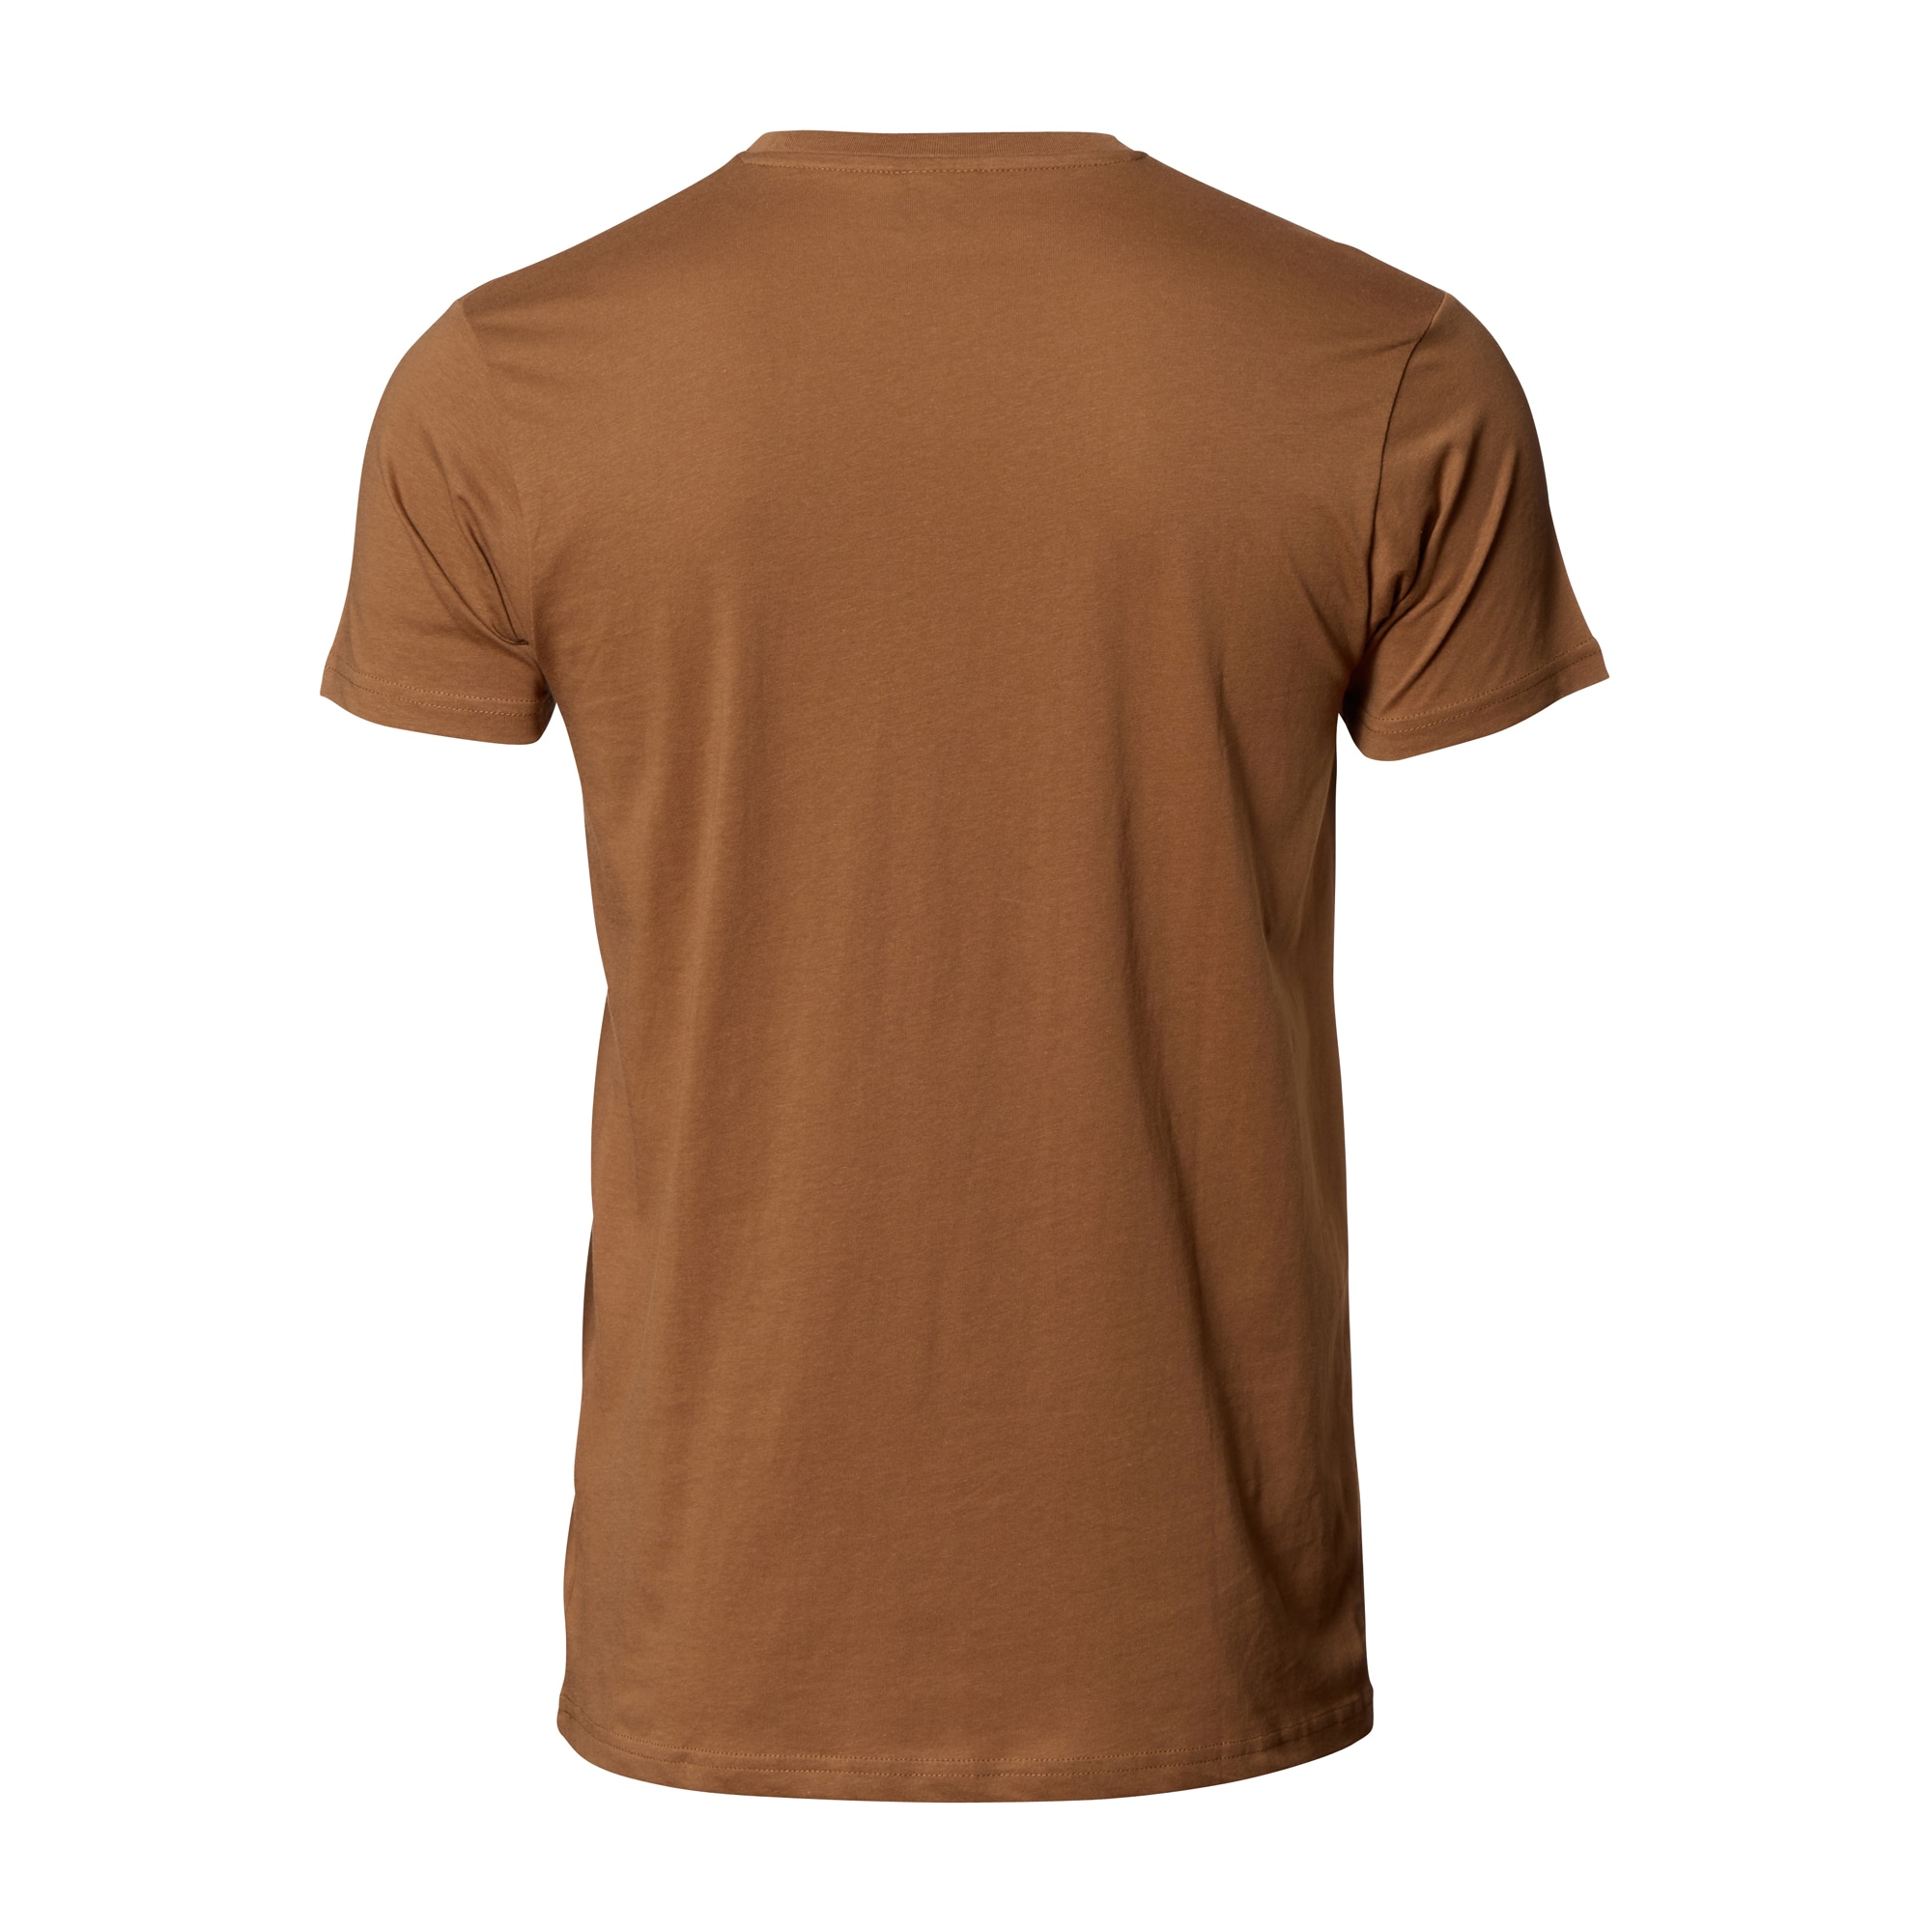 T-Shirt brown | T-Shirt brown | Shirts | Shirts | Men | Clothing